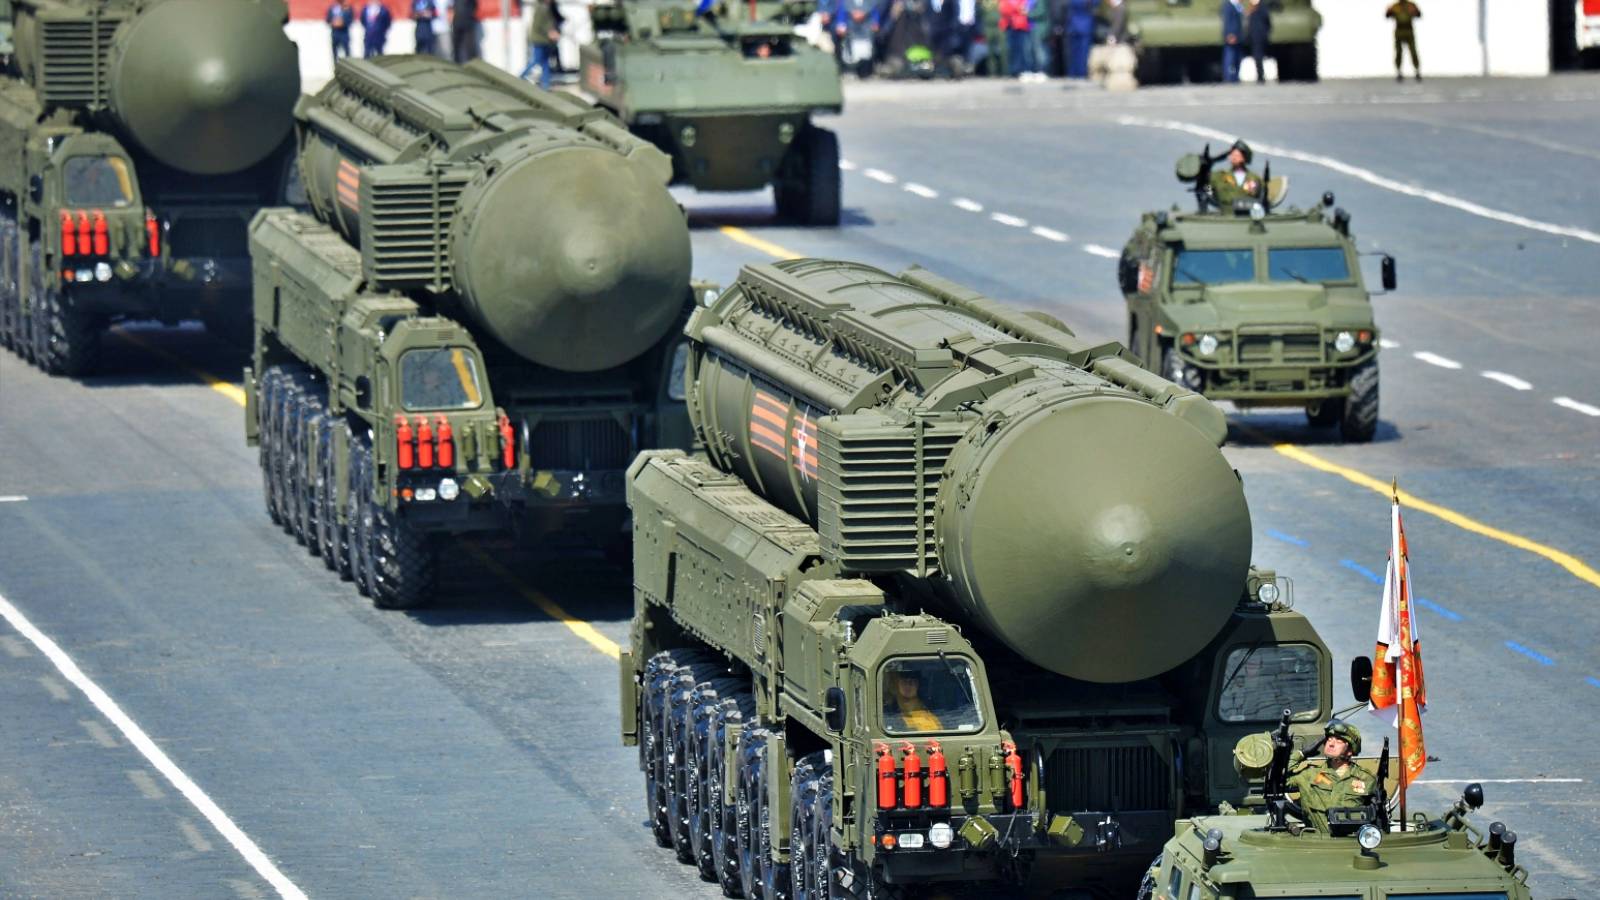 Rusland, het nucleaire risico is ernstig; in de Derde Wereldoorlog zouden kernwapens worden gebruikt